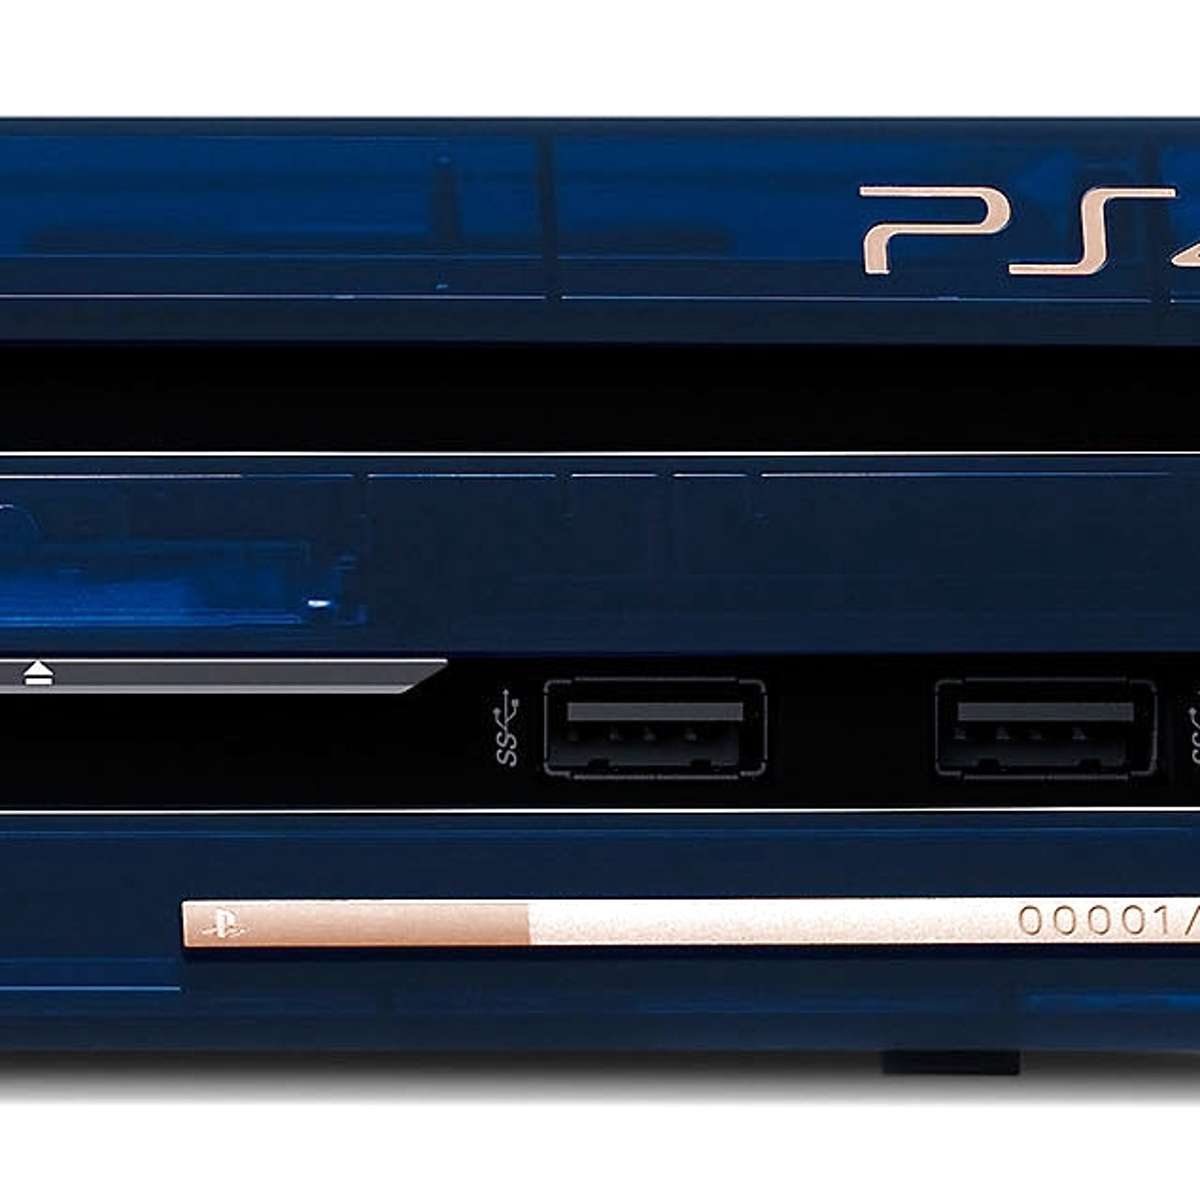 Hands-on della nuova PS4 Pro Deluxe 500 Million Limited Edition - prova